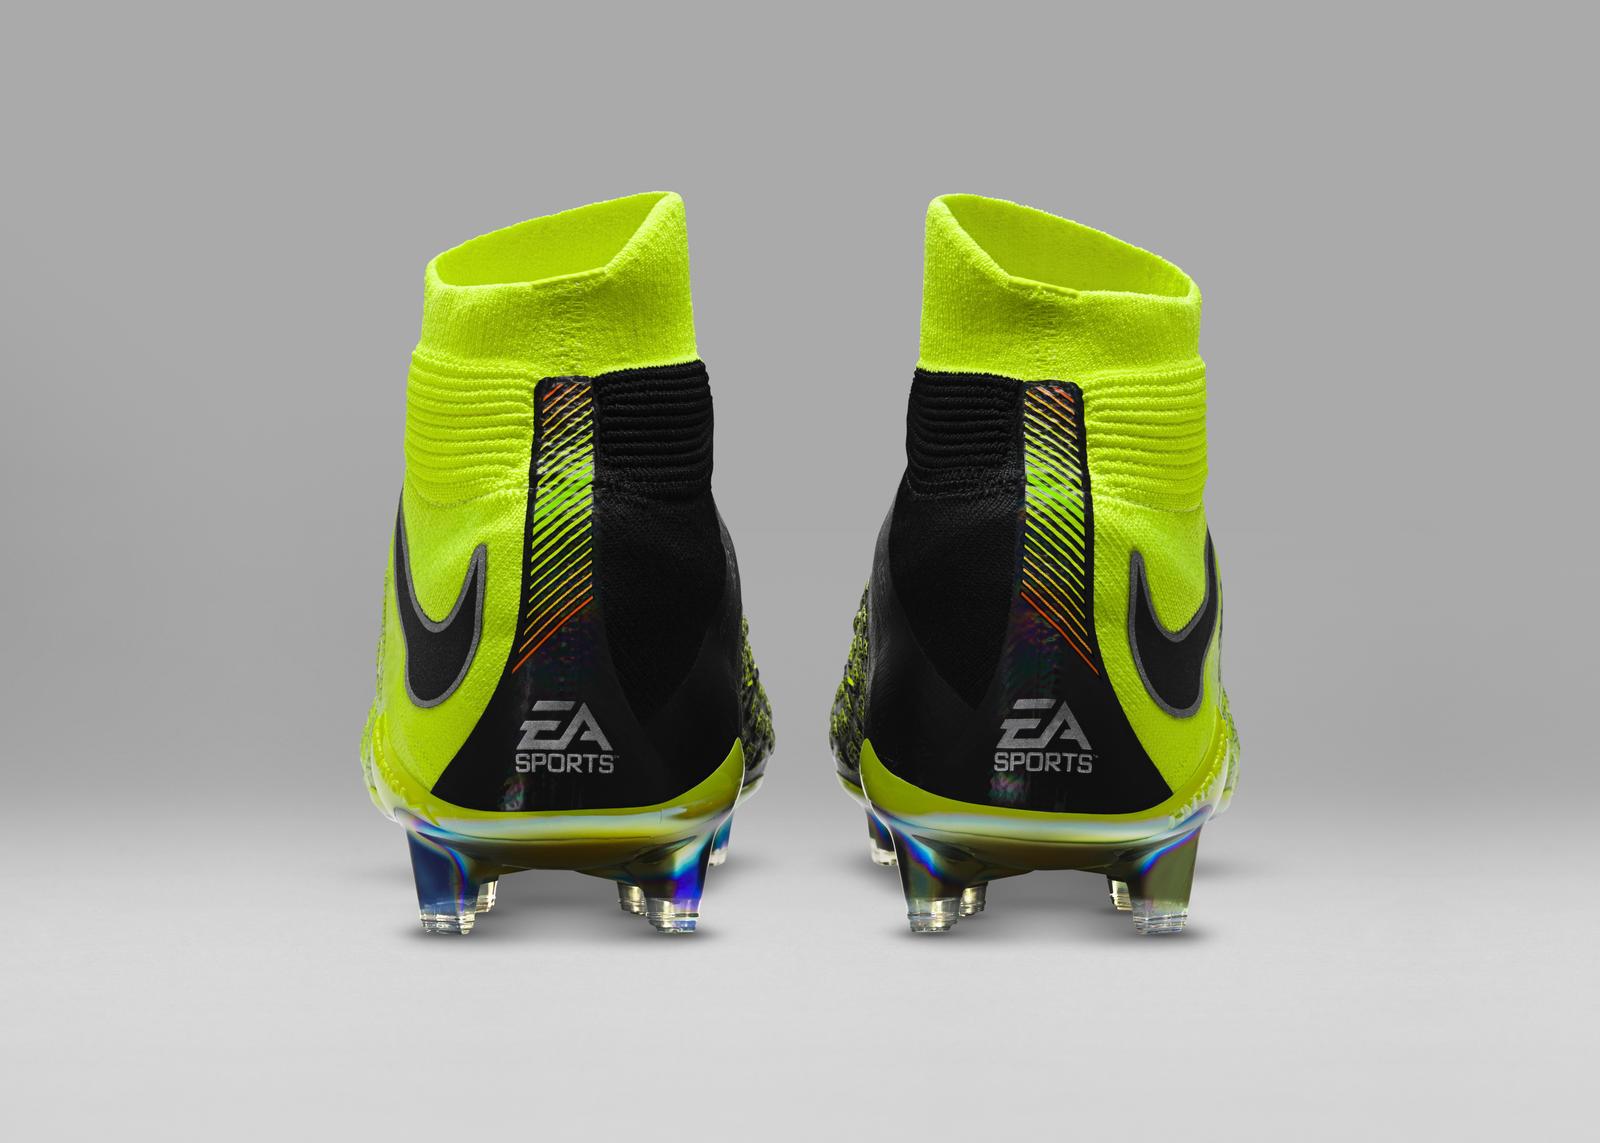 Nike EA Sports Hypervenom 3 5 - WearTesters